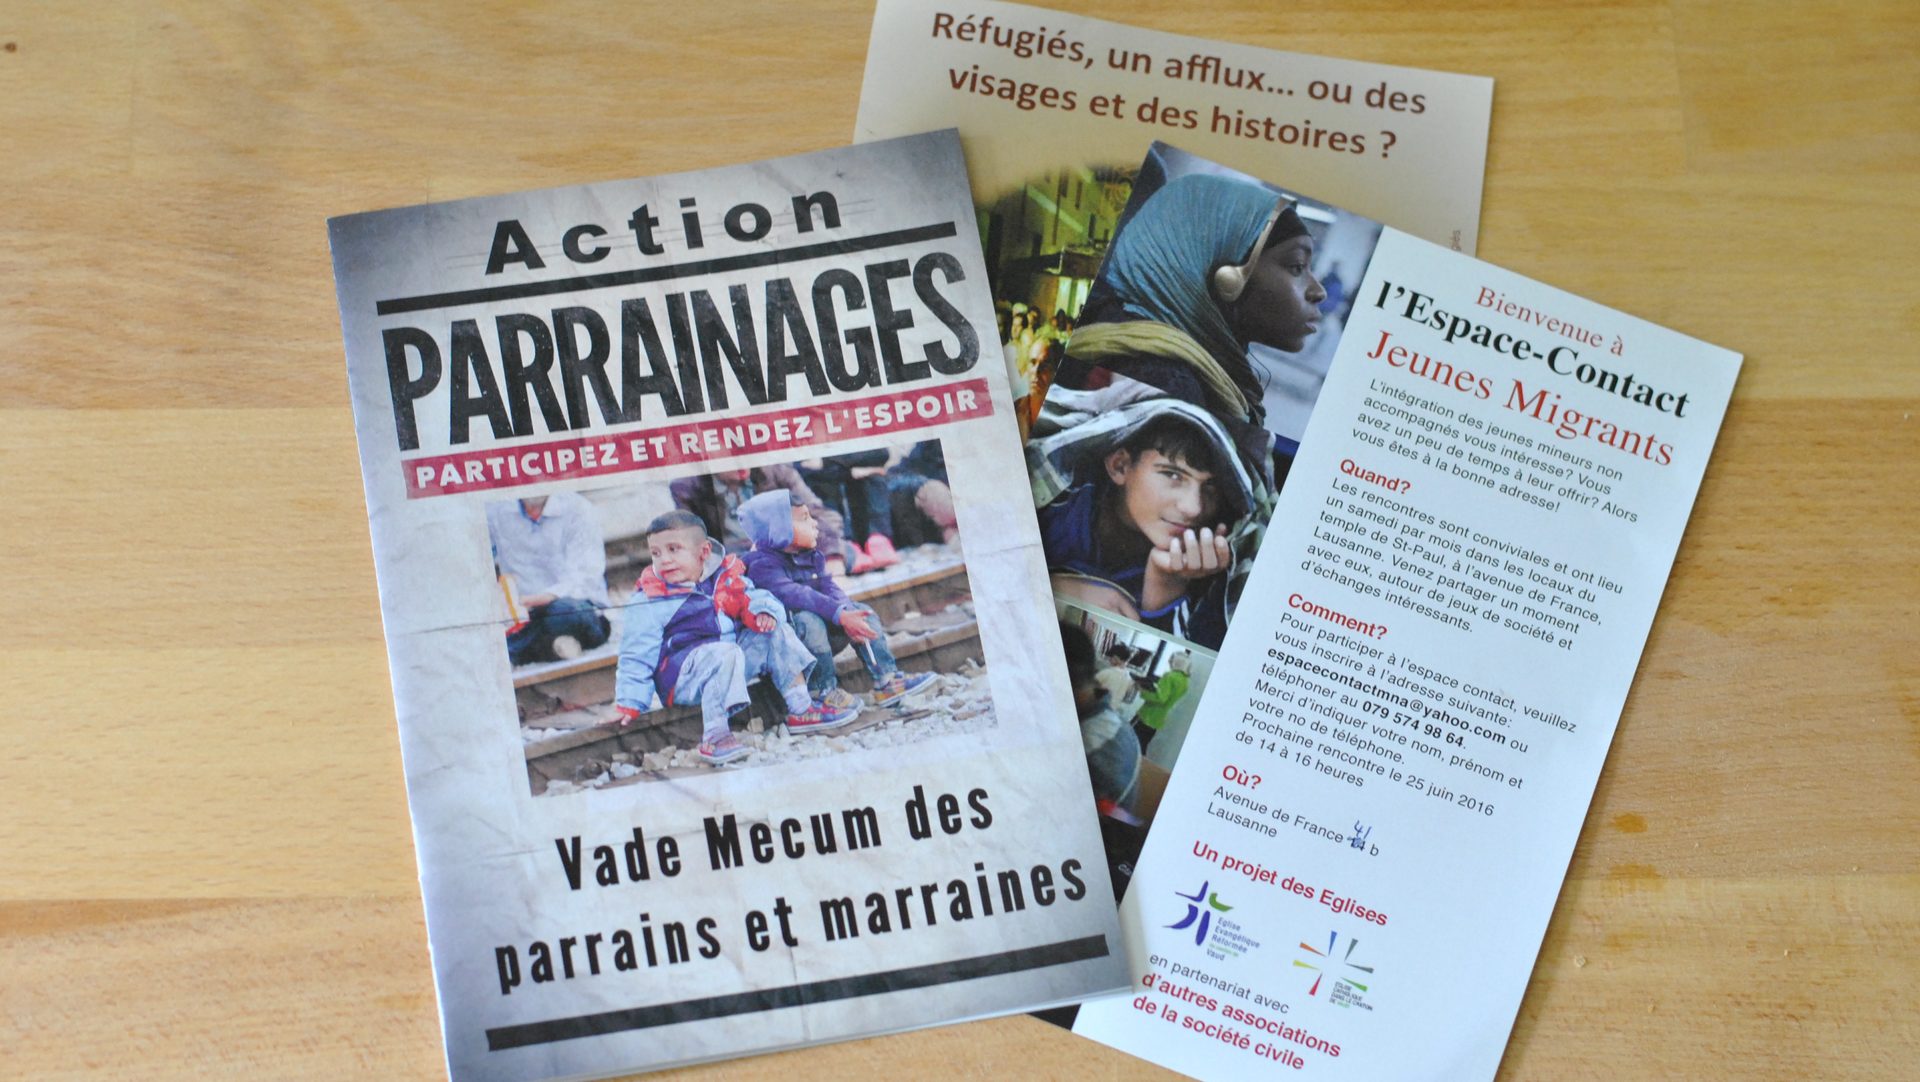 Action Parrainages des migrants, un projet des Eglises catholique et protestante du canton de Vaud (photo Maurice Page) 